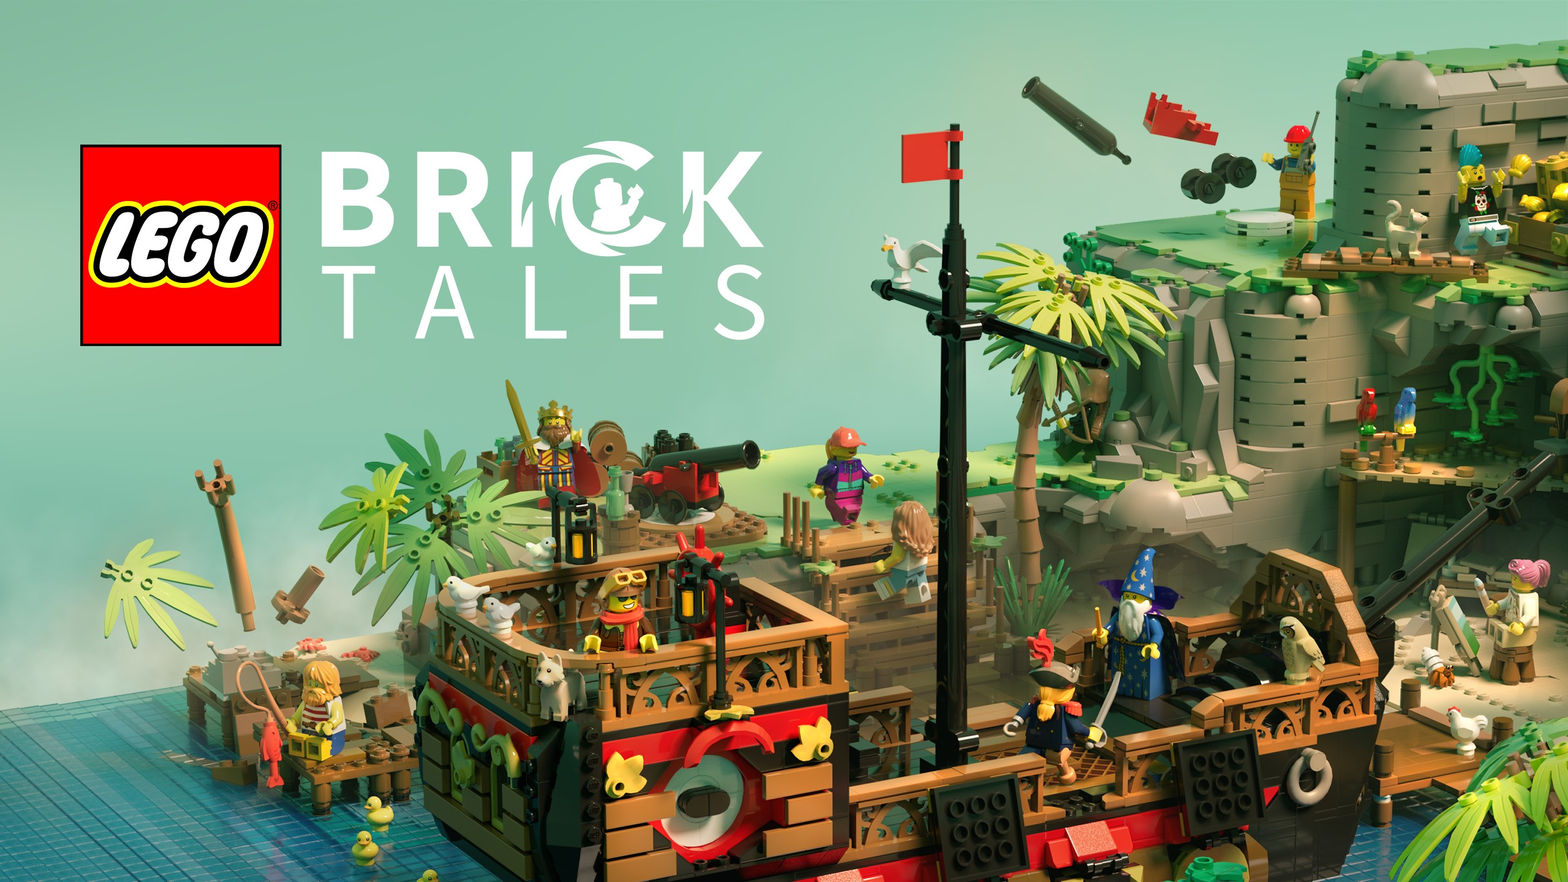 LEGO® Bricktales